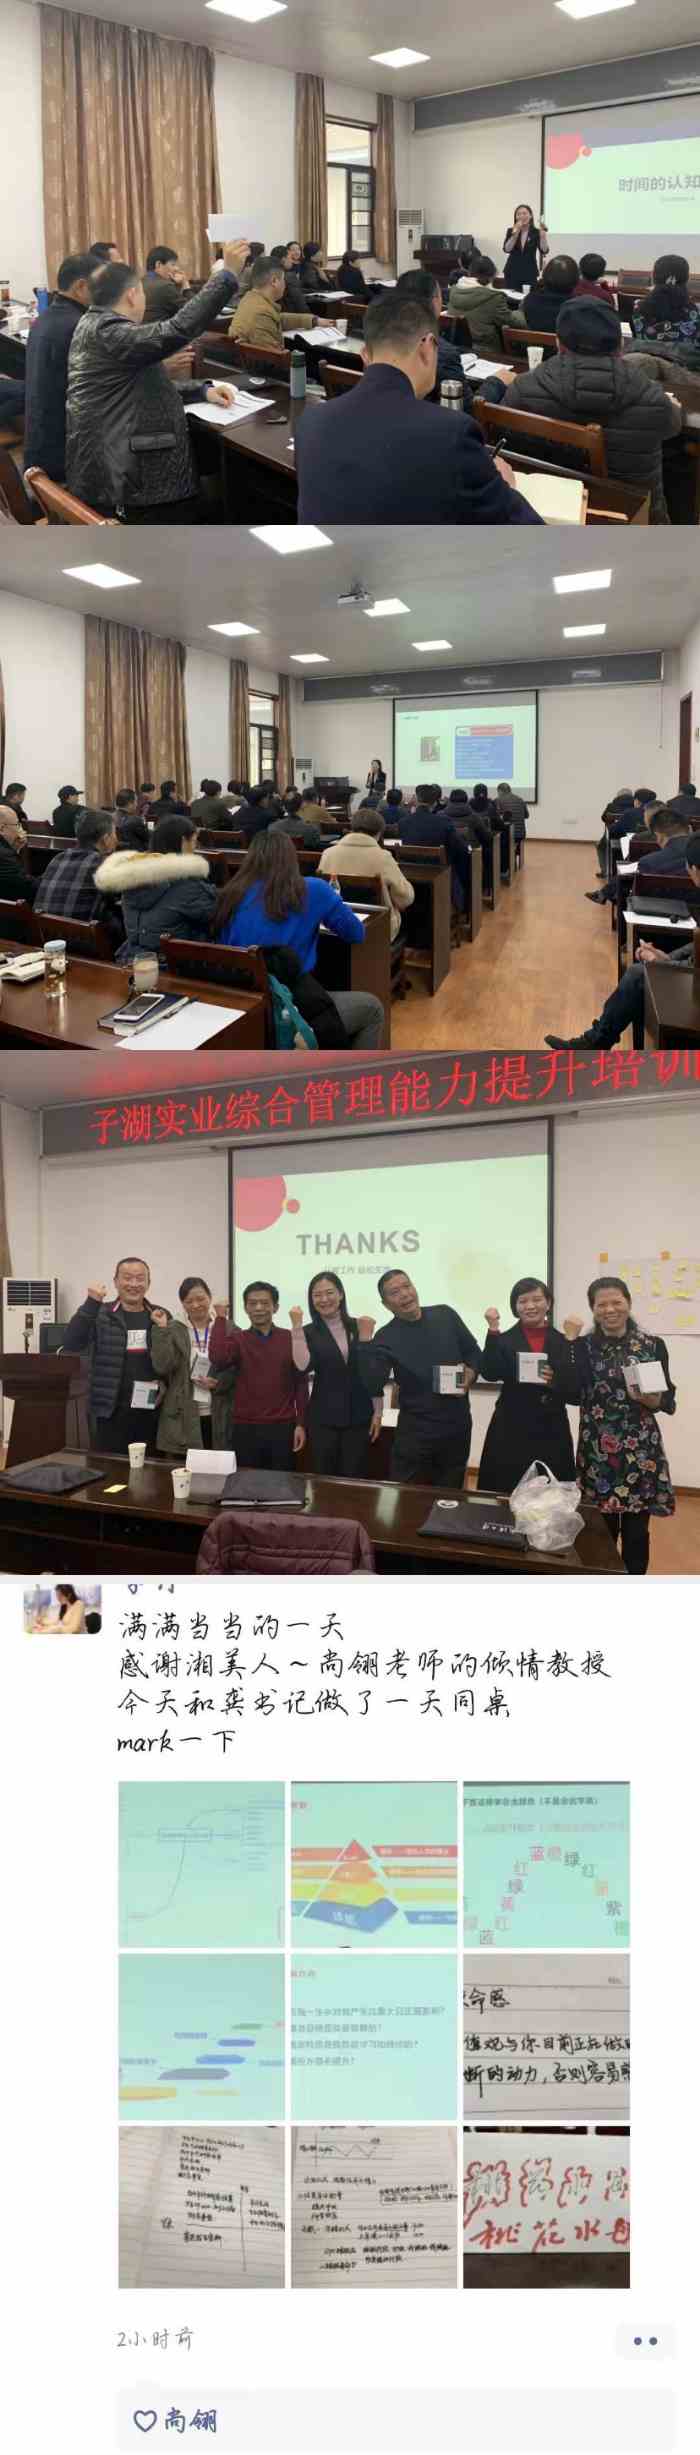  尚翎老师-2019年12月14日在武汉为武汉市子湖实业有限公司讲授《高效率时间管理与工作规划》课程